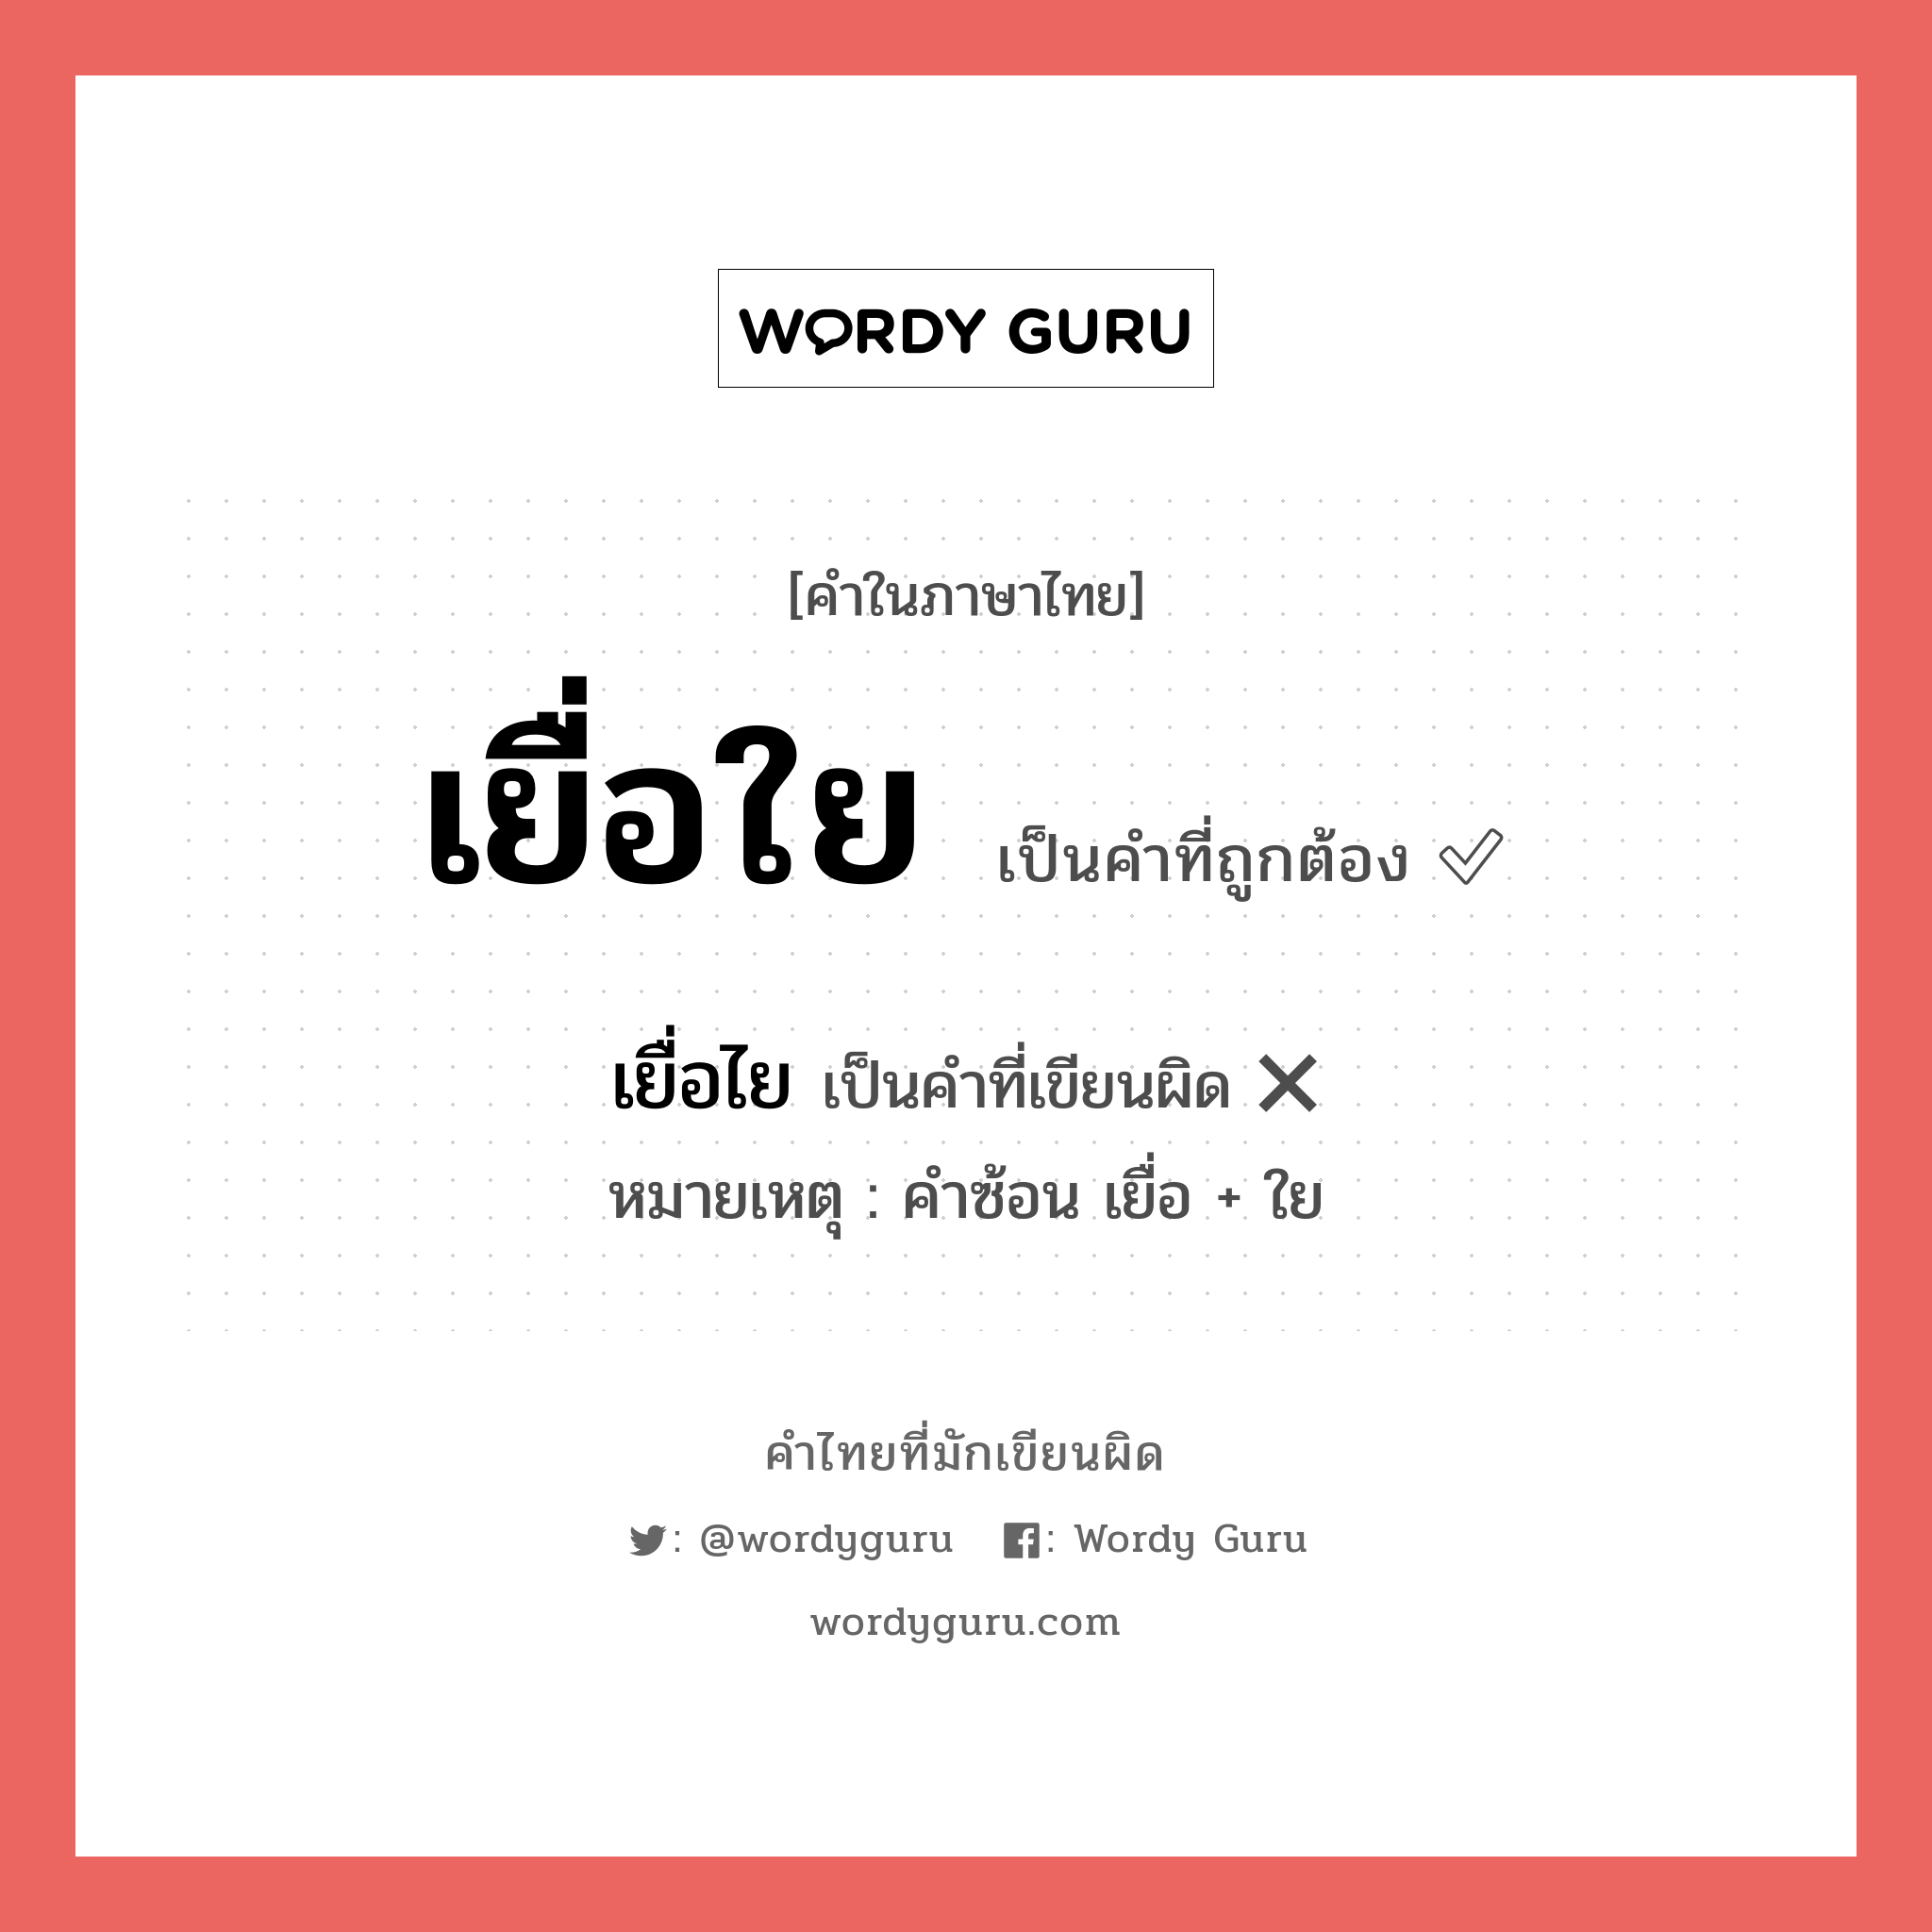 เยื่อใย หรือ เยื่อไย เขียนยังไง? คำไหนเขียนถูก?, คำในภาษาไทยที่มักเขียนผิด เยื่อใย คำที่ผิด ❌ เยื่อไย หมายเหตุ คำซ้อน เยื่อ + ใย